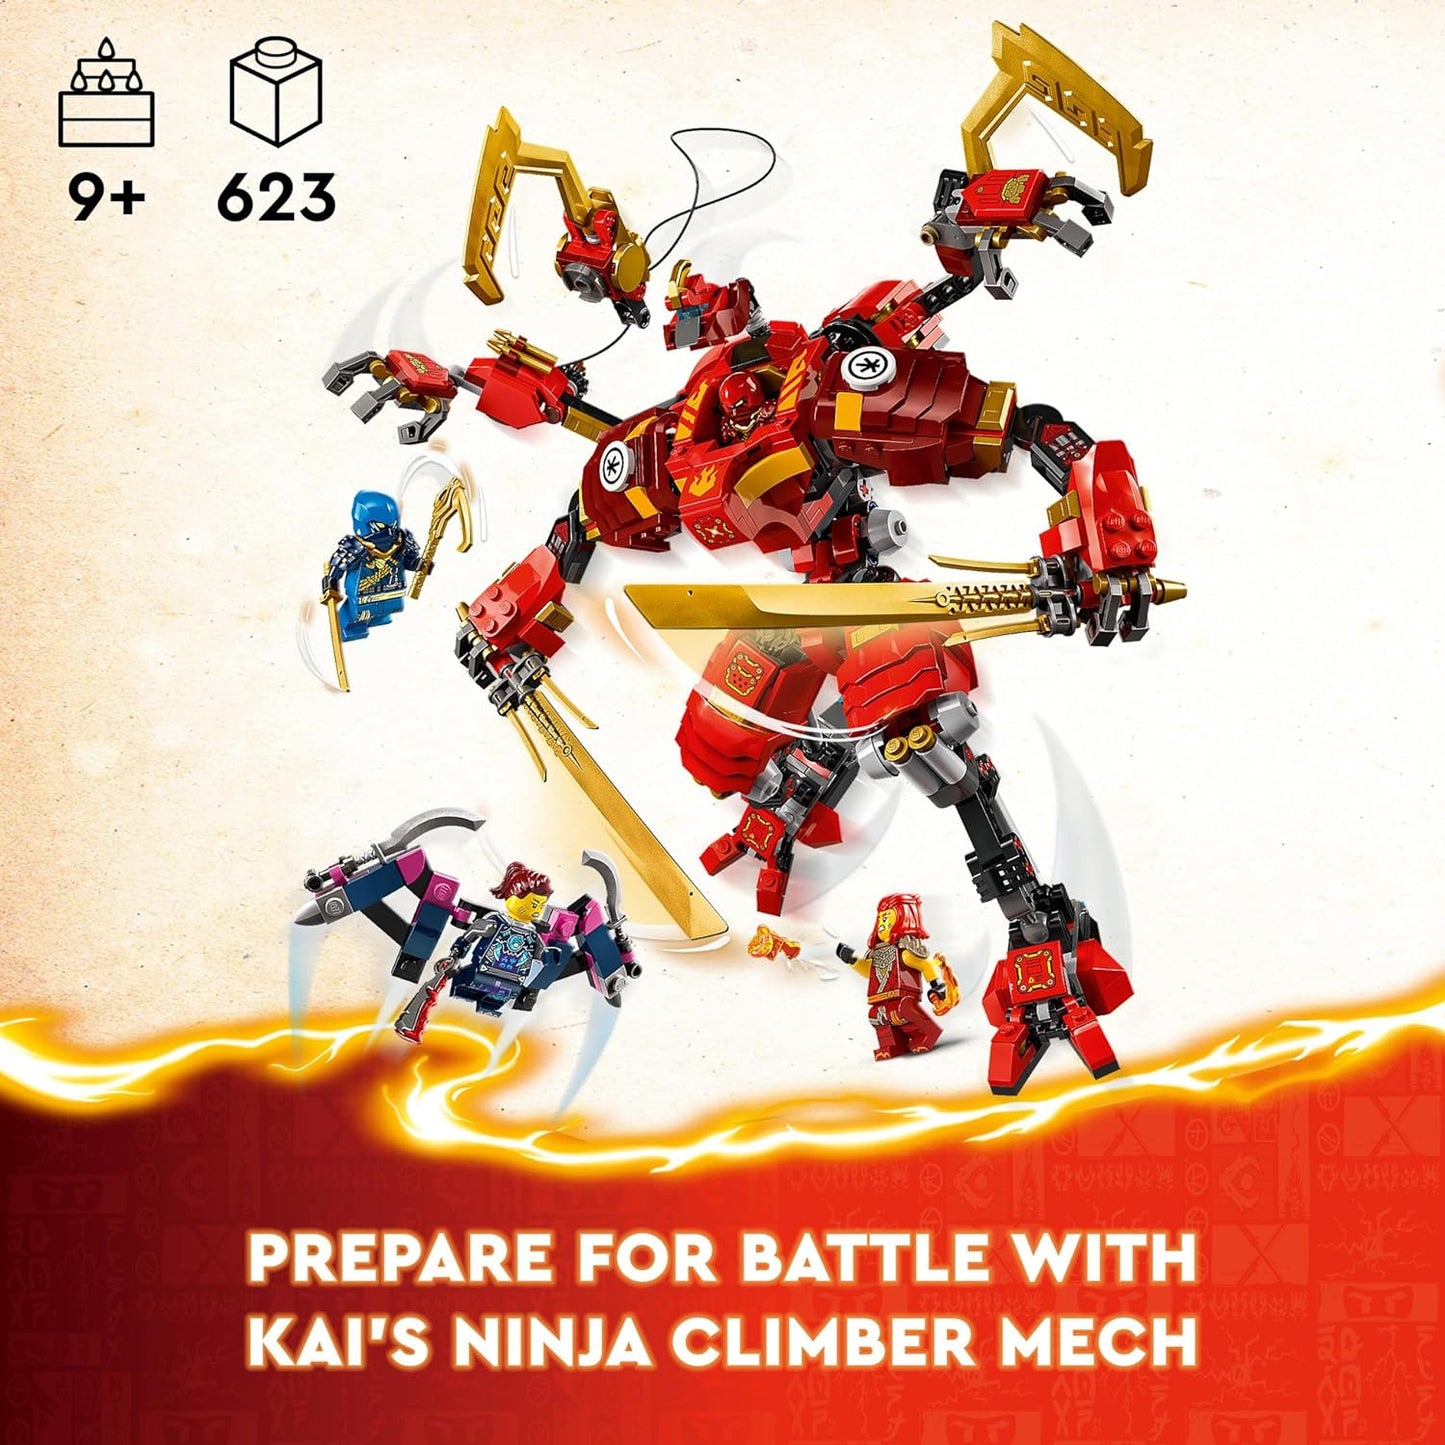 LEGO   Conjunto de brinquedos Ninja Climber Mech de NINJAGO Kai, boneco de ação montável para meninos, meninas e crianças de 9 anos ou mais com minifiguras de 4 personagens, incluindo Kai para brincadeira independente, ideia de presente